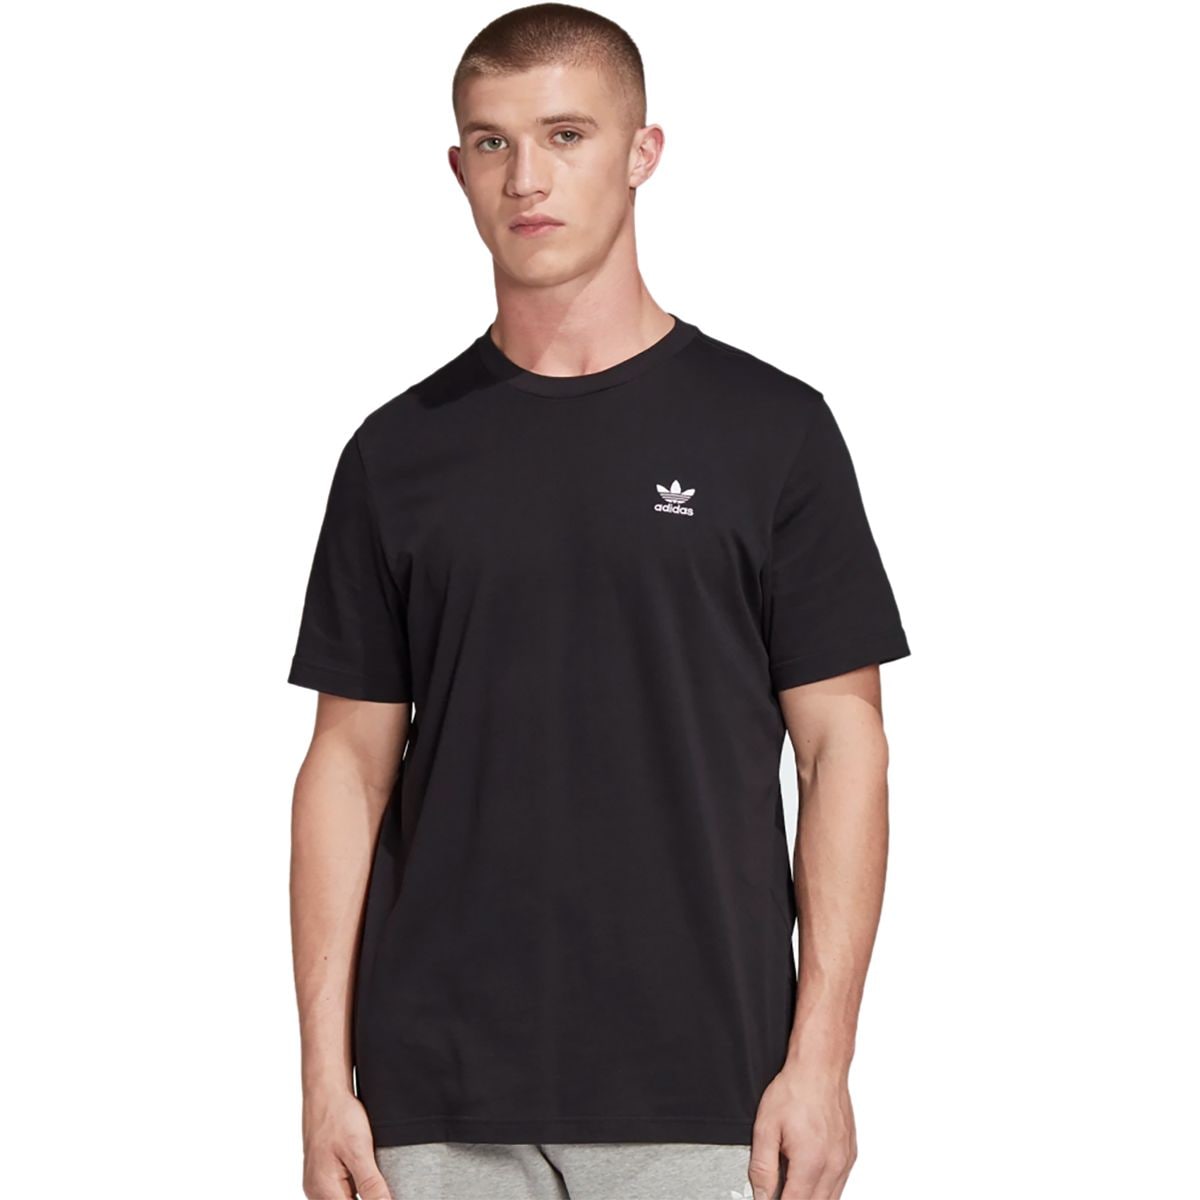 Adidas Essential T-Shirt - Men's | Backcountry.com